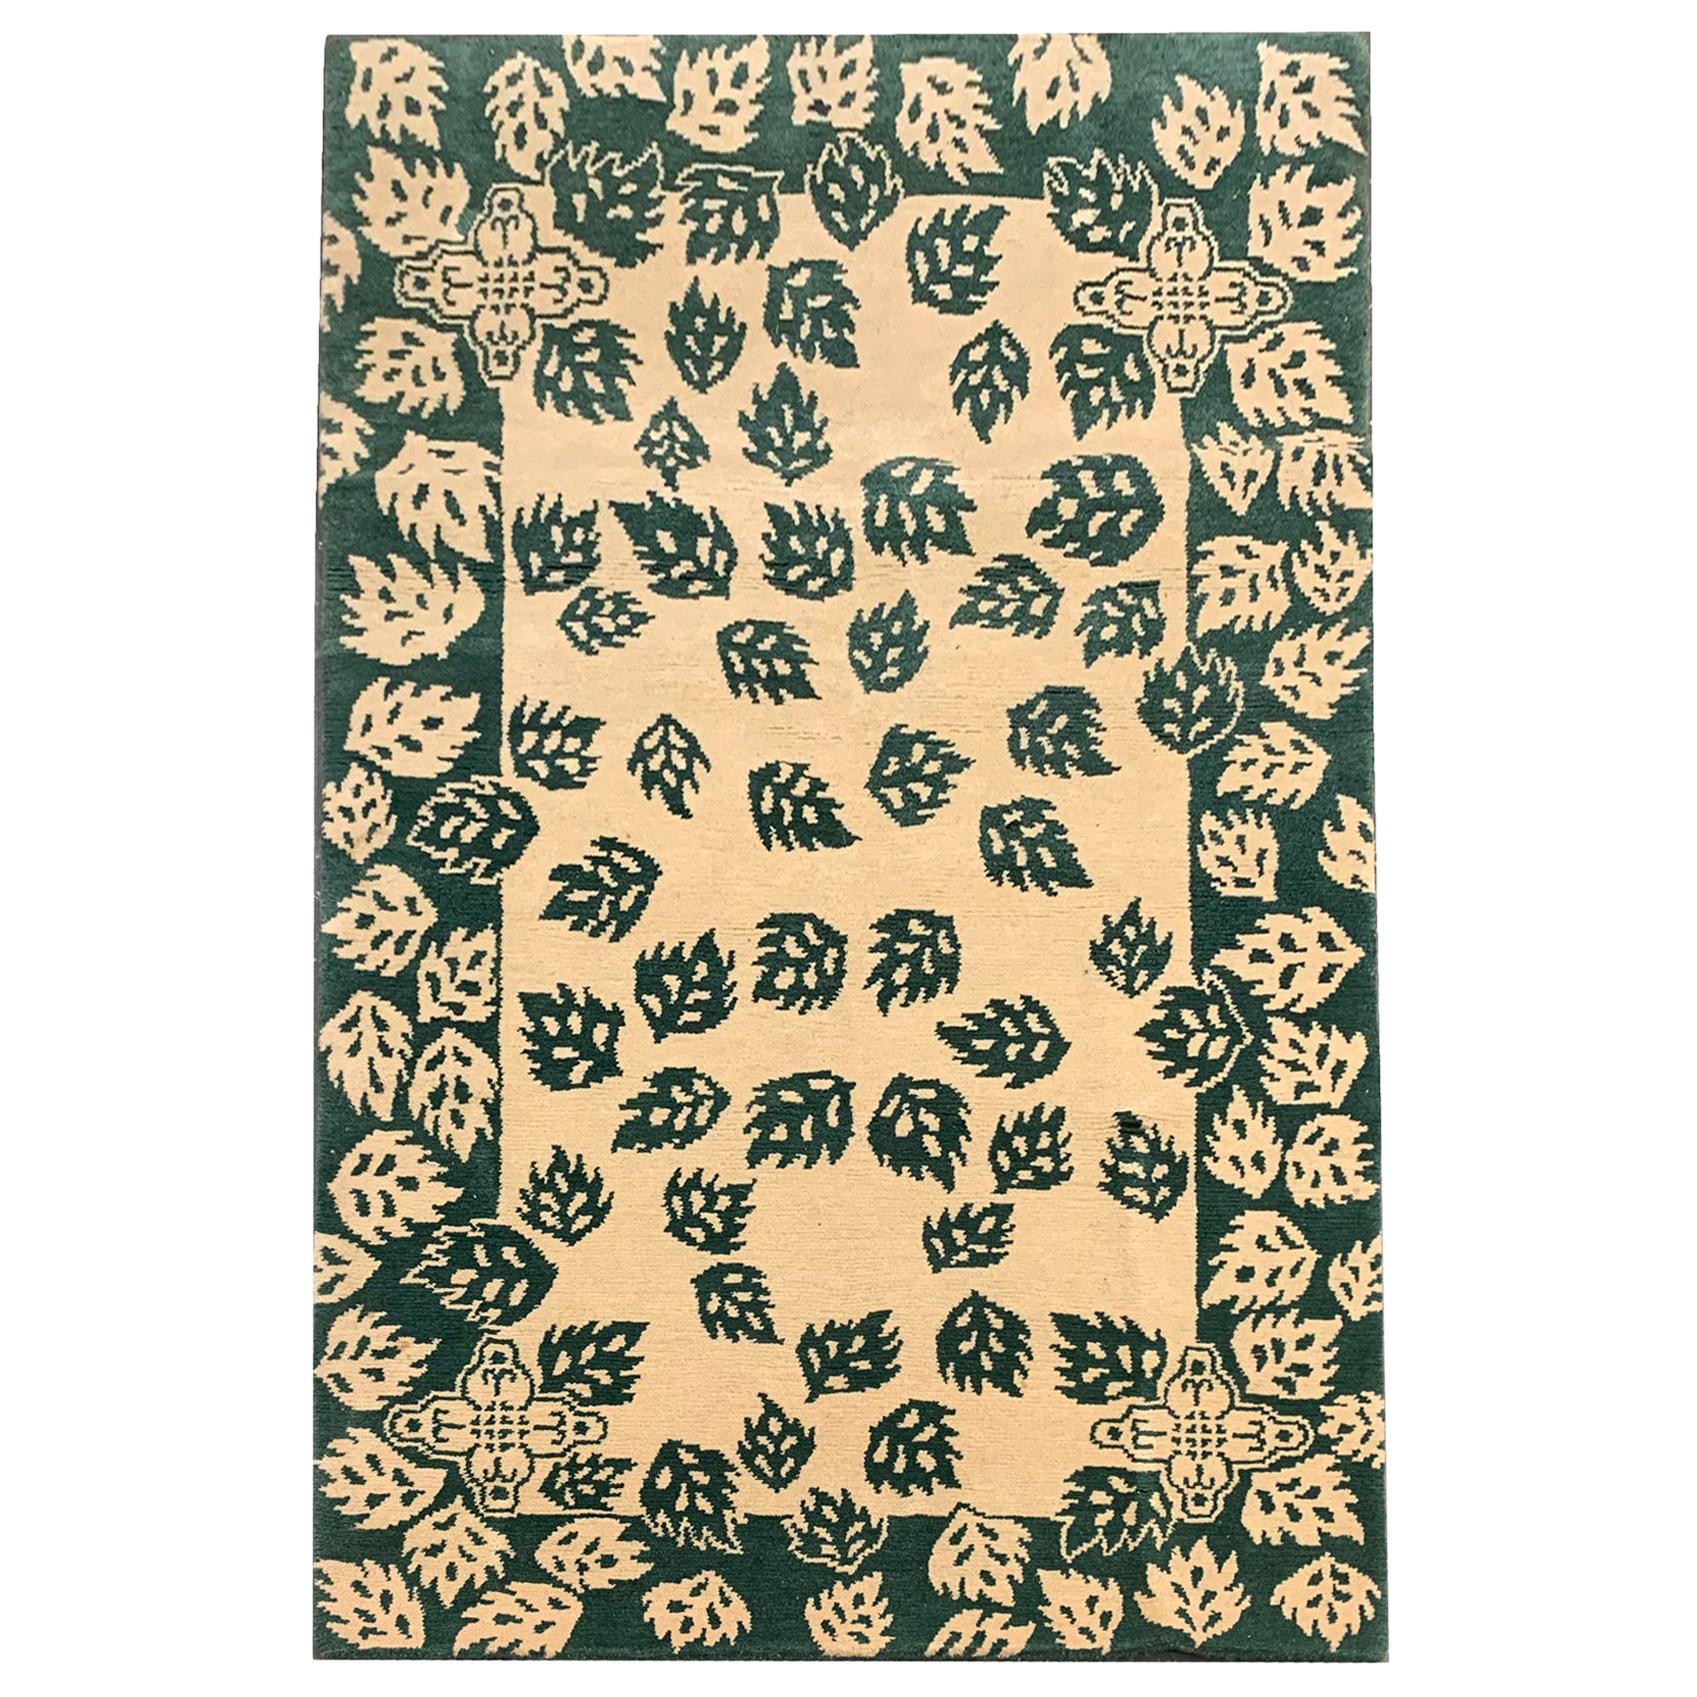 Grüner moderner handgefertigter Teppich aus cremefarbener Wolle für Home Decor